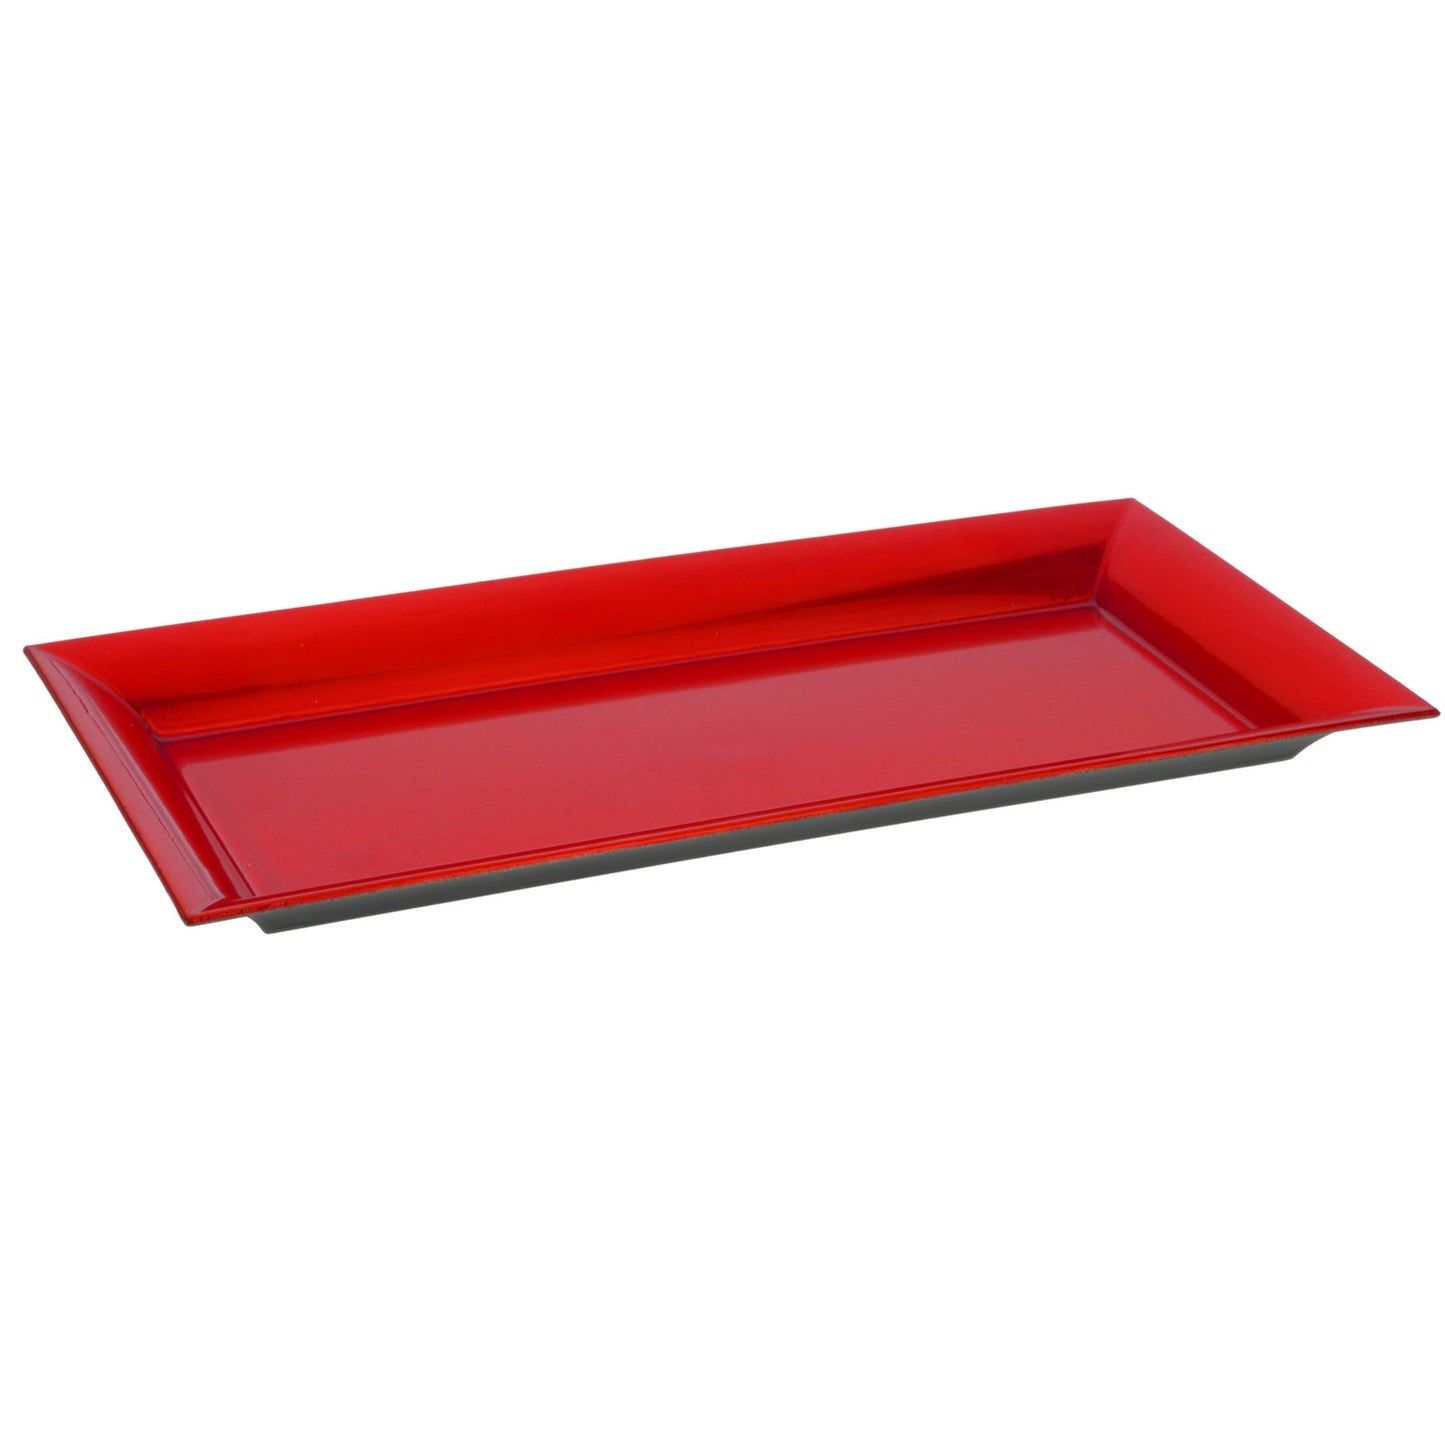 Πιάτο Παραλληλόγραμμο Γυαλιστερό Κόκκινο Πλαστικό 36x17cm